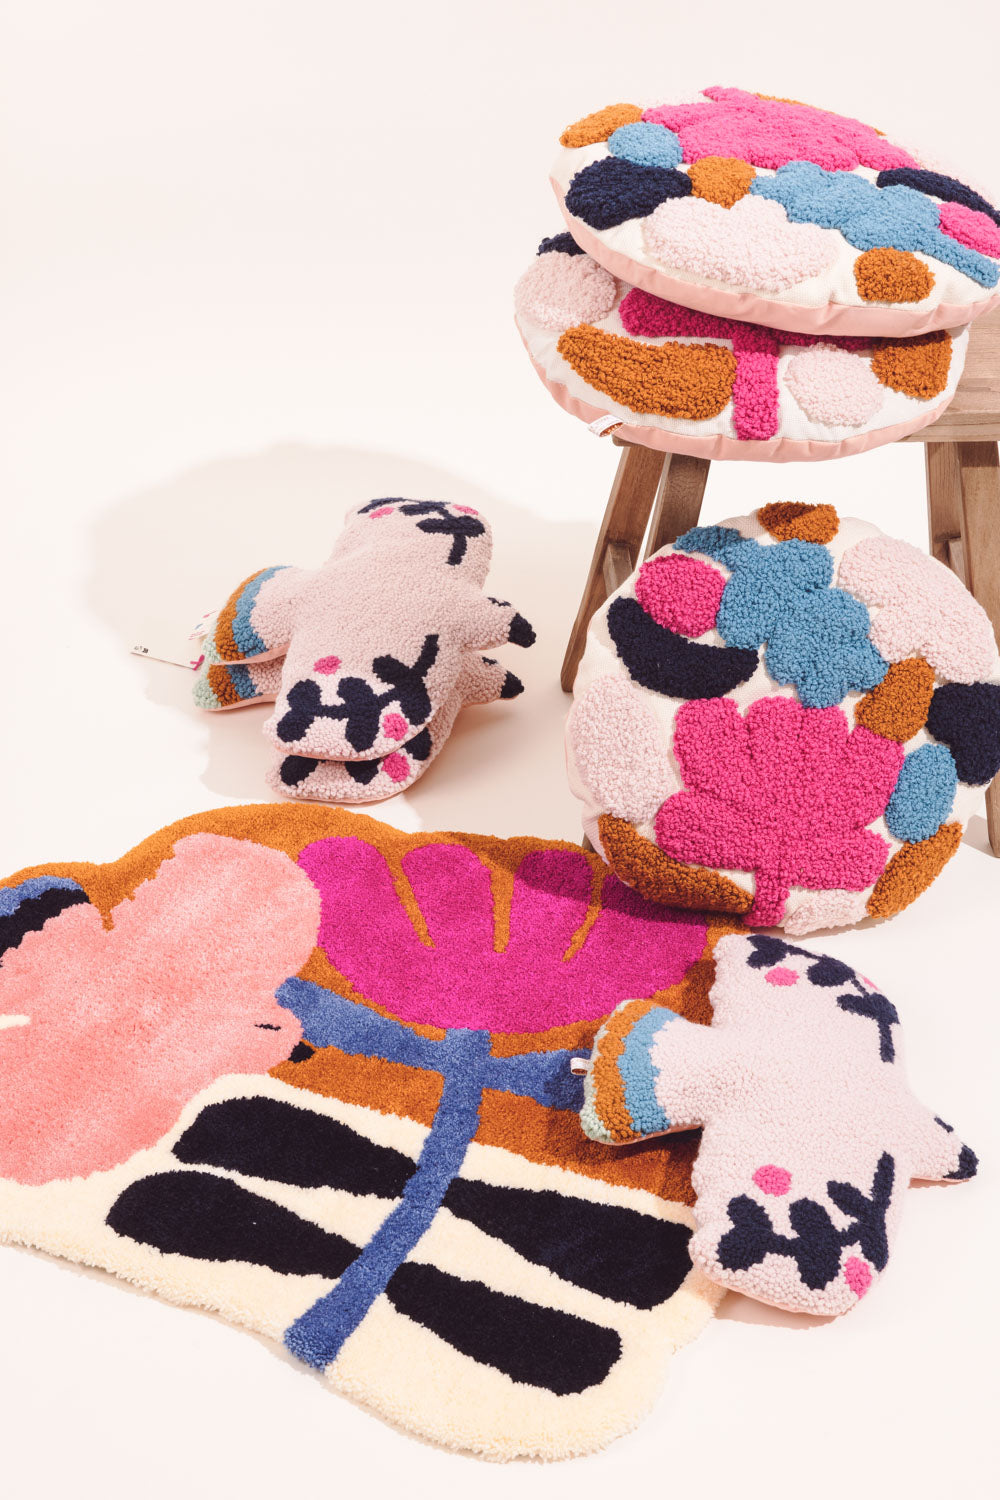 Multicolored tufted carpet
Des Petits Hauts x CHAUMIERE OISEAU